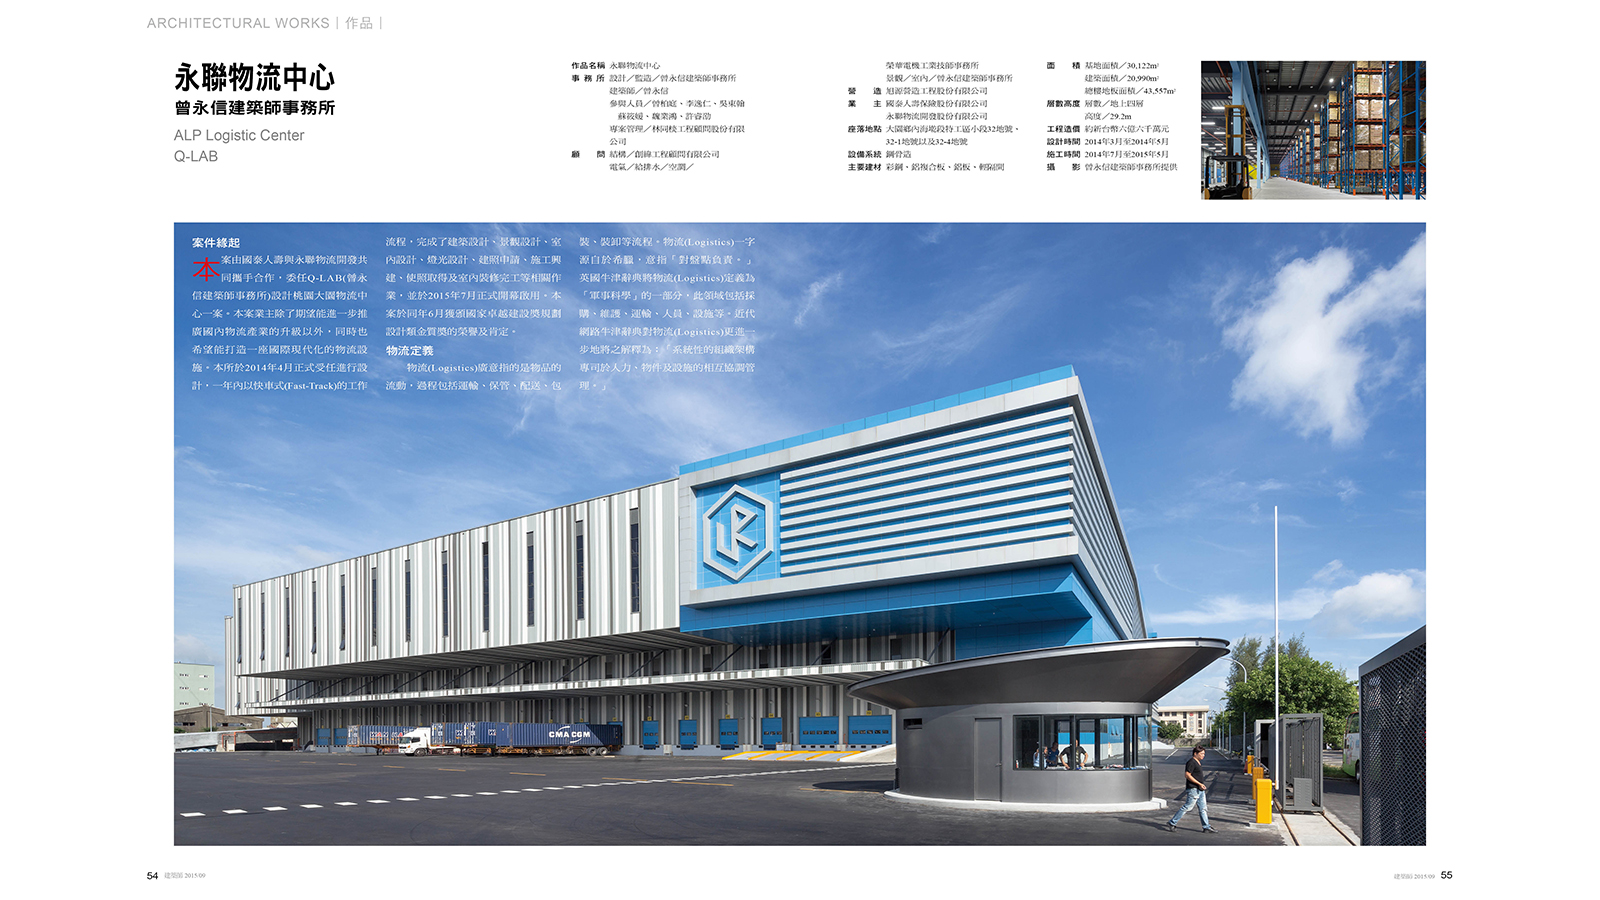 2015-09-建築師雜誌-02.jpg